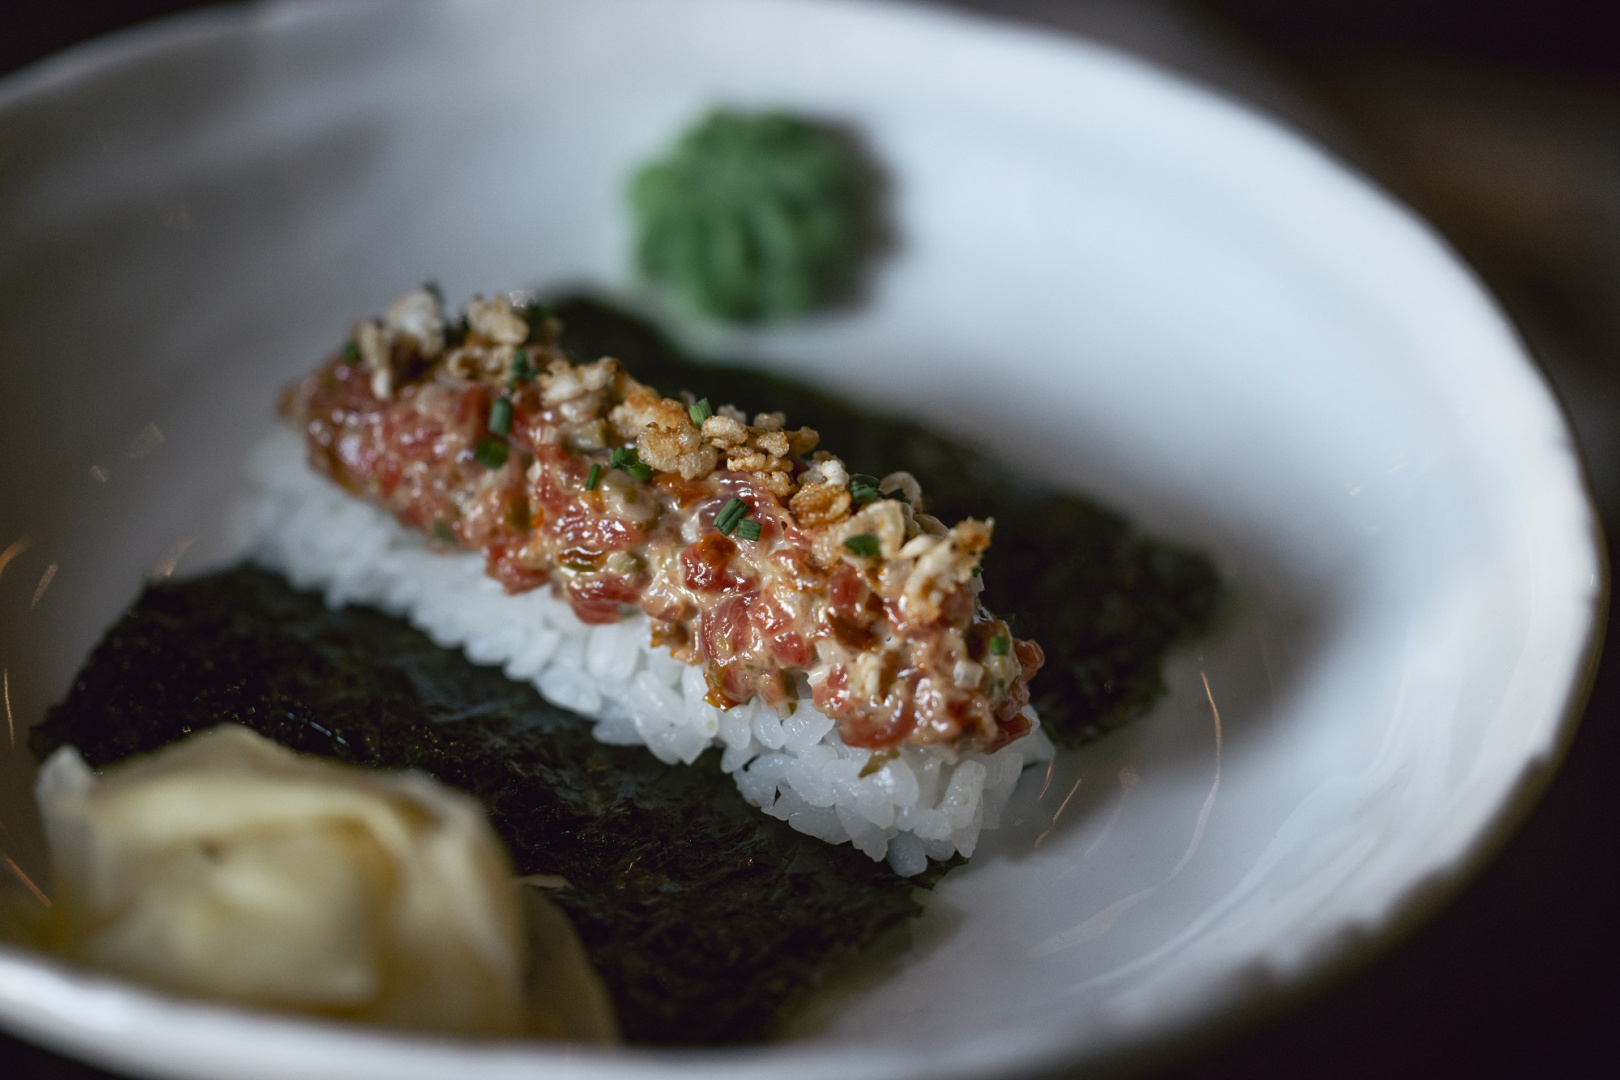 Роти, кальби и кимчи: меню с азиатским акцентом в ресторане Saiko - фотография № 9